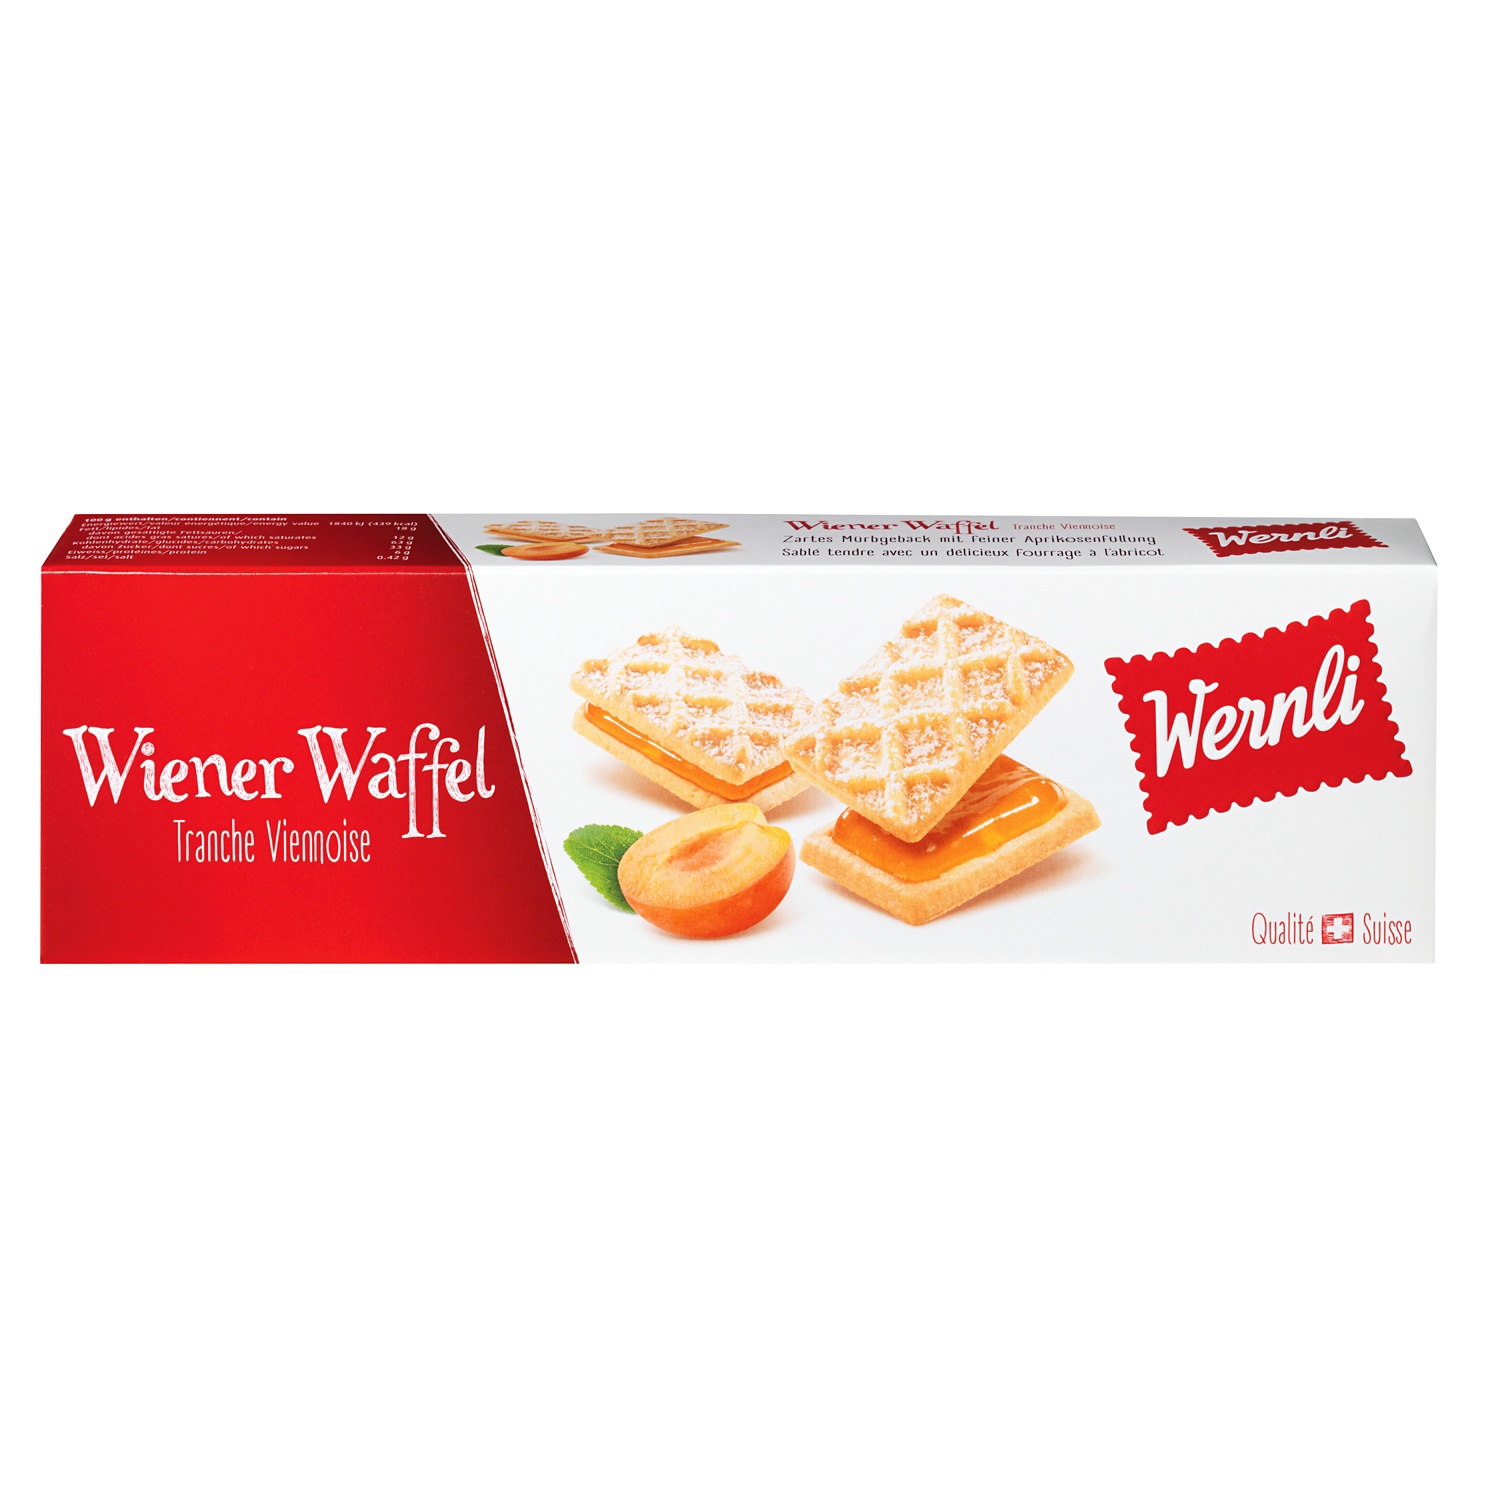 WERNLI Wiener Waffel